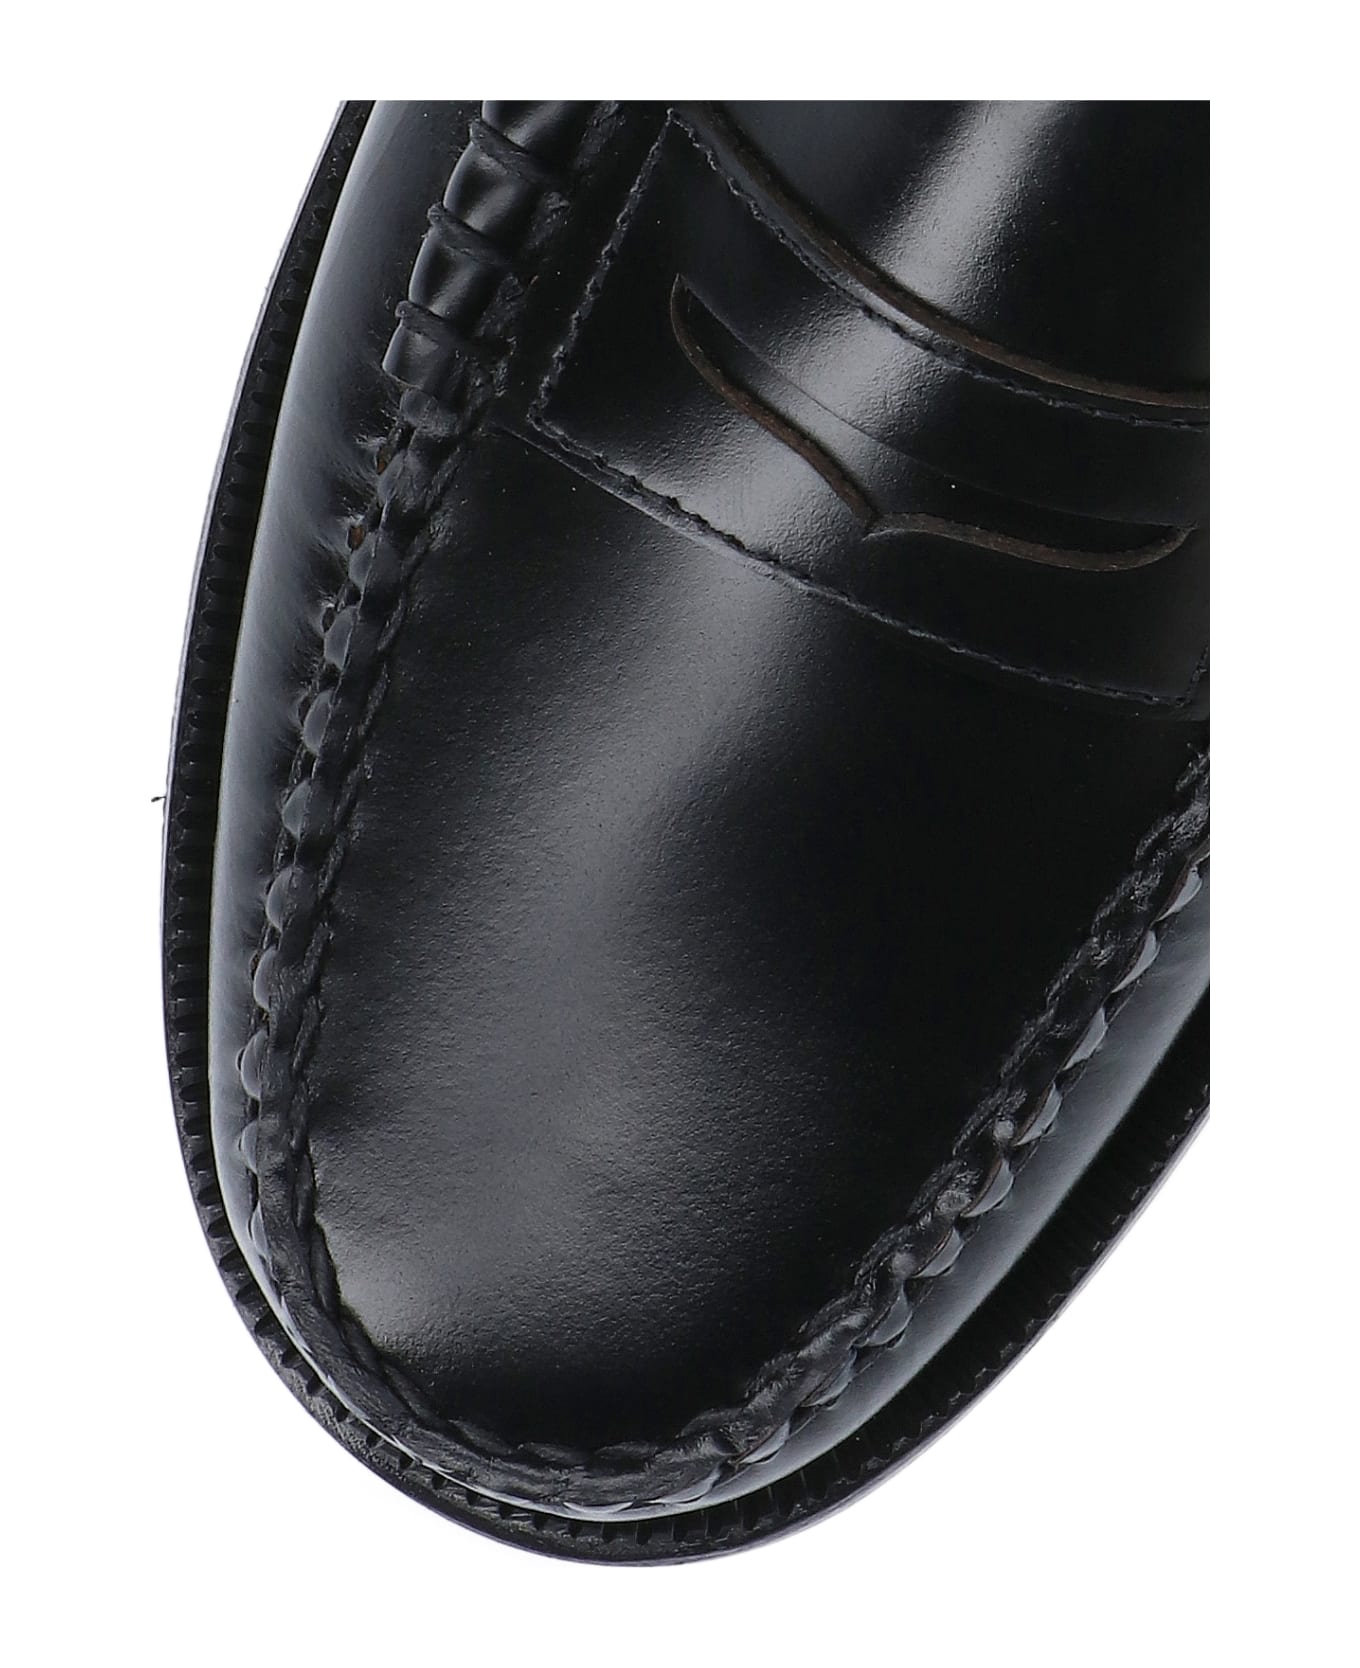 Sebago 'classic Dan' Loafers - Black フラットシューズ